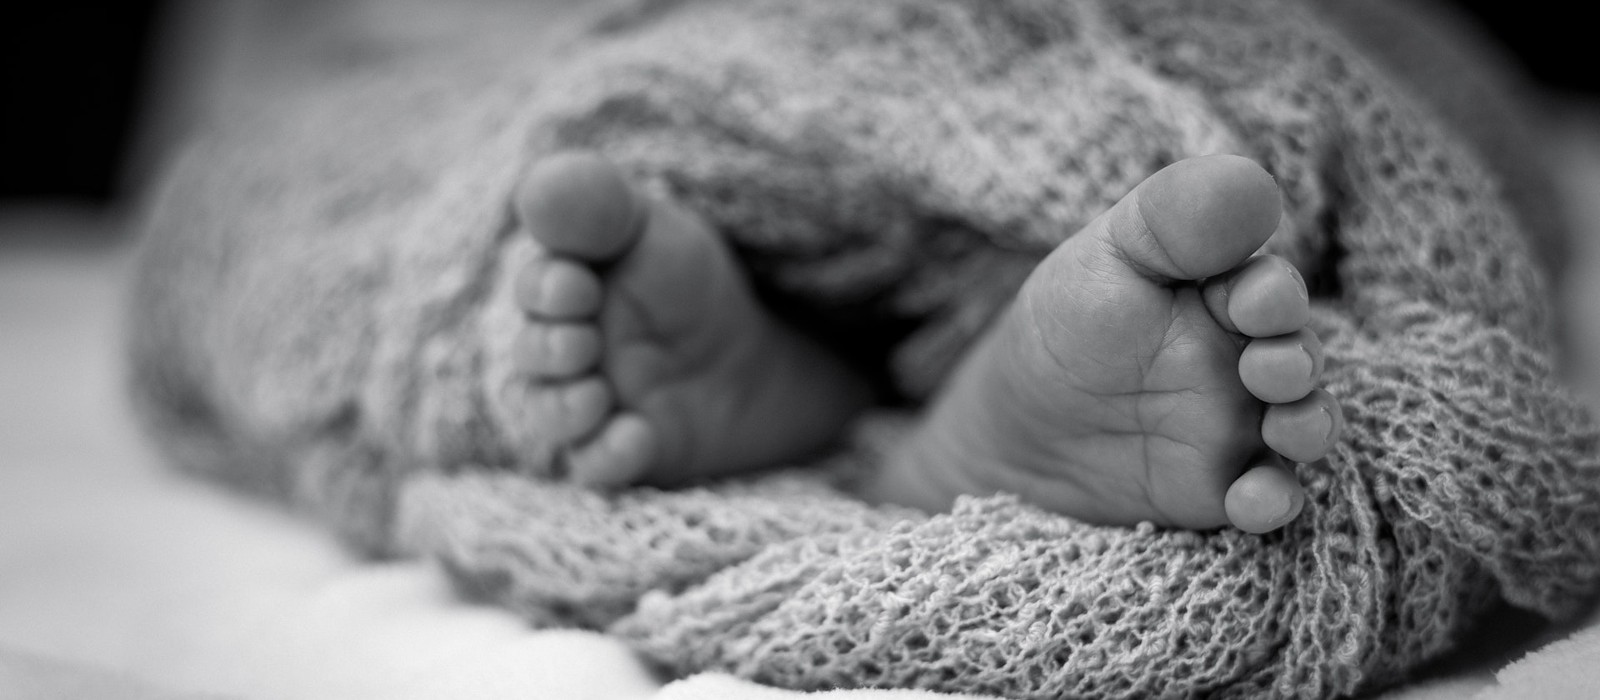 Bébé déclaré mort : Nouvelle comparution de l’assistante infirmière au 25 mai